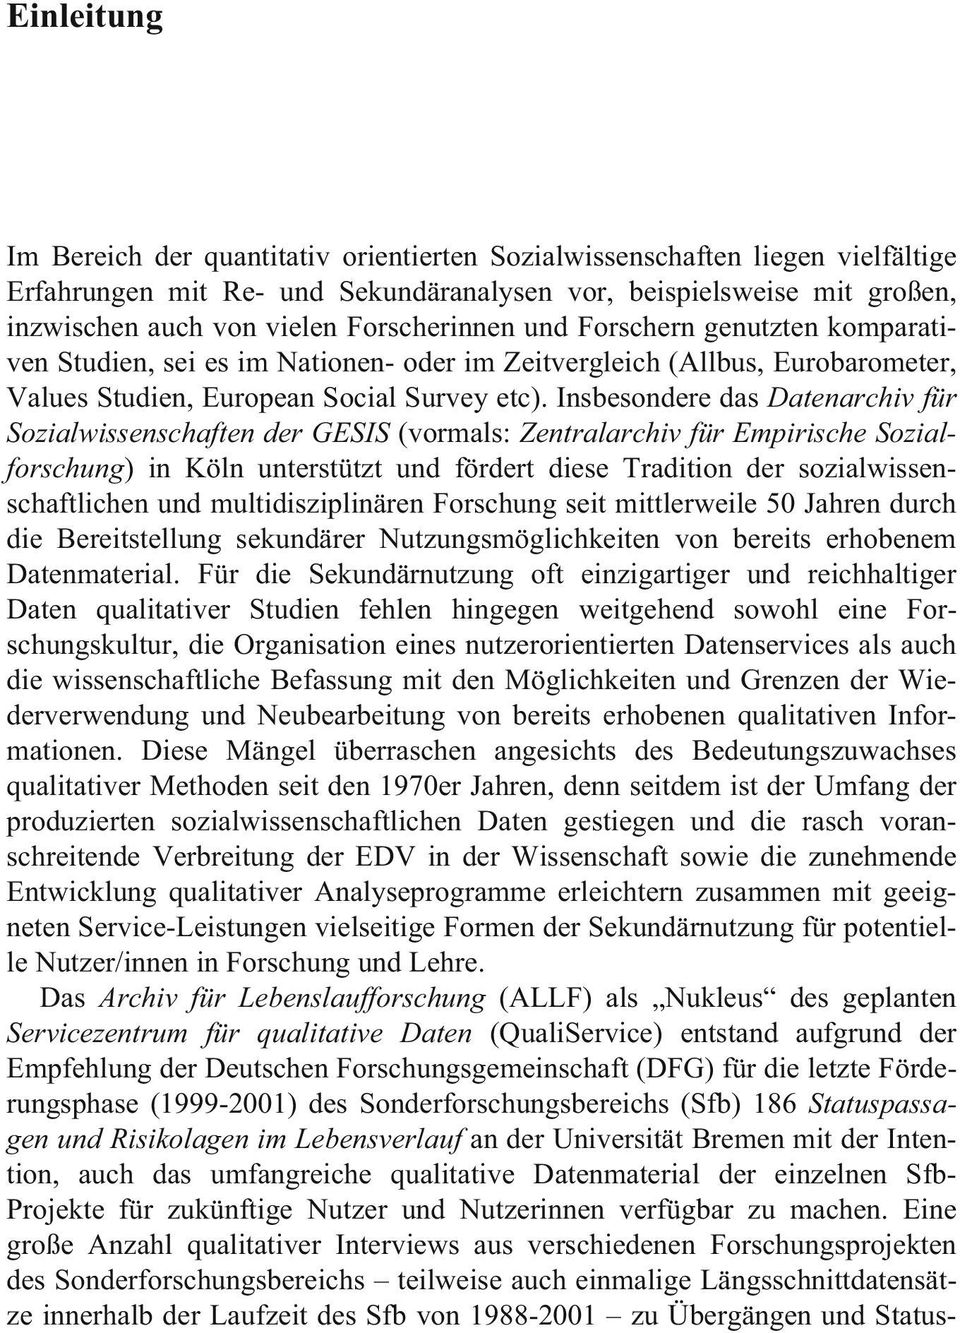 Insbesondere das Datenarchiv für Sozialwissenschaften der GESIS (vormals: Zentralarchiv für Empirische Sozialforschung) in Köln unterstützt und fördert diese Tradition der sozialwissenschaftlichen